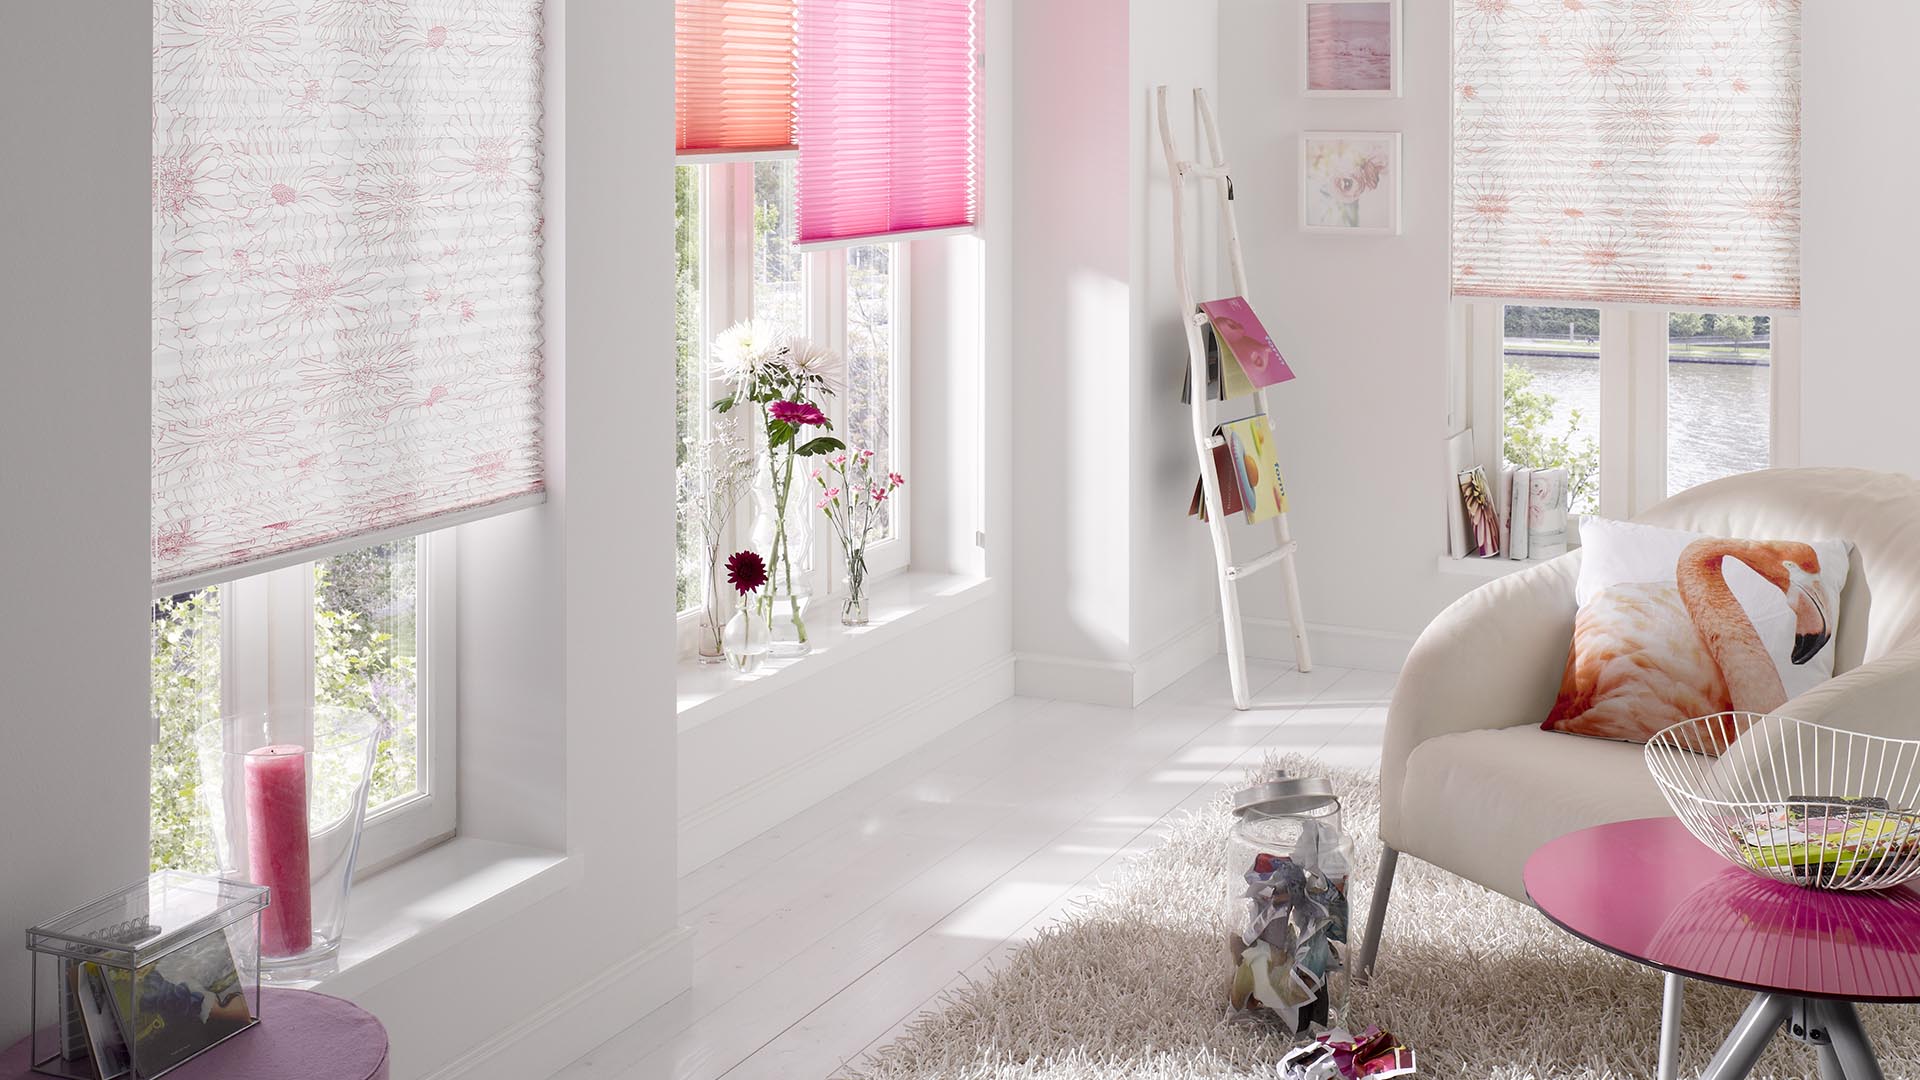 Moderne freihängende Plissees in weiß und rosa